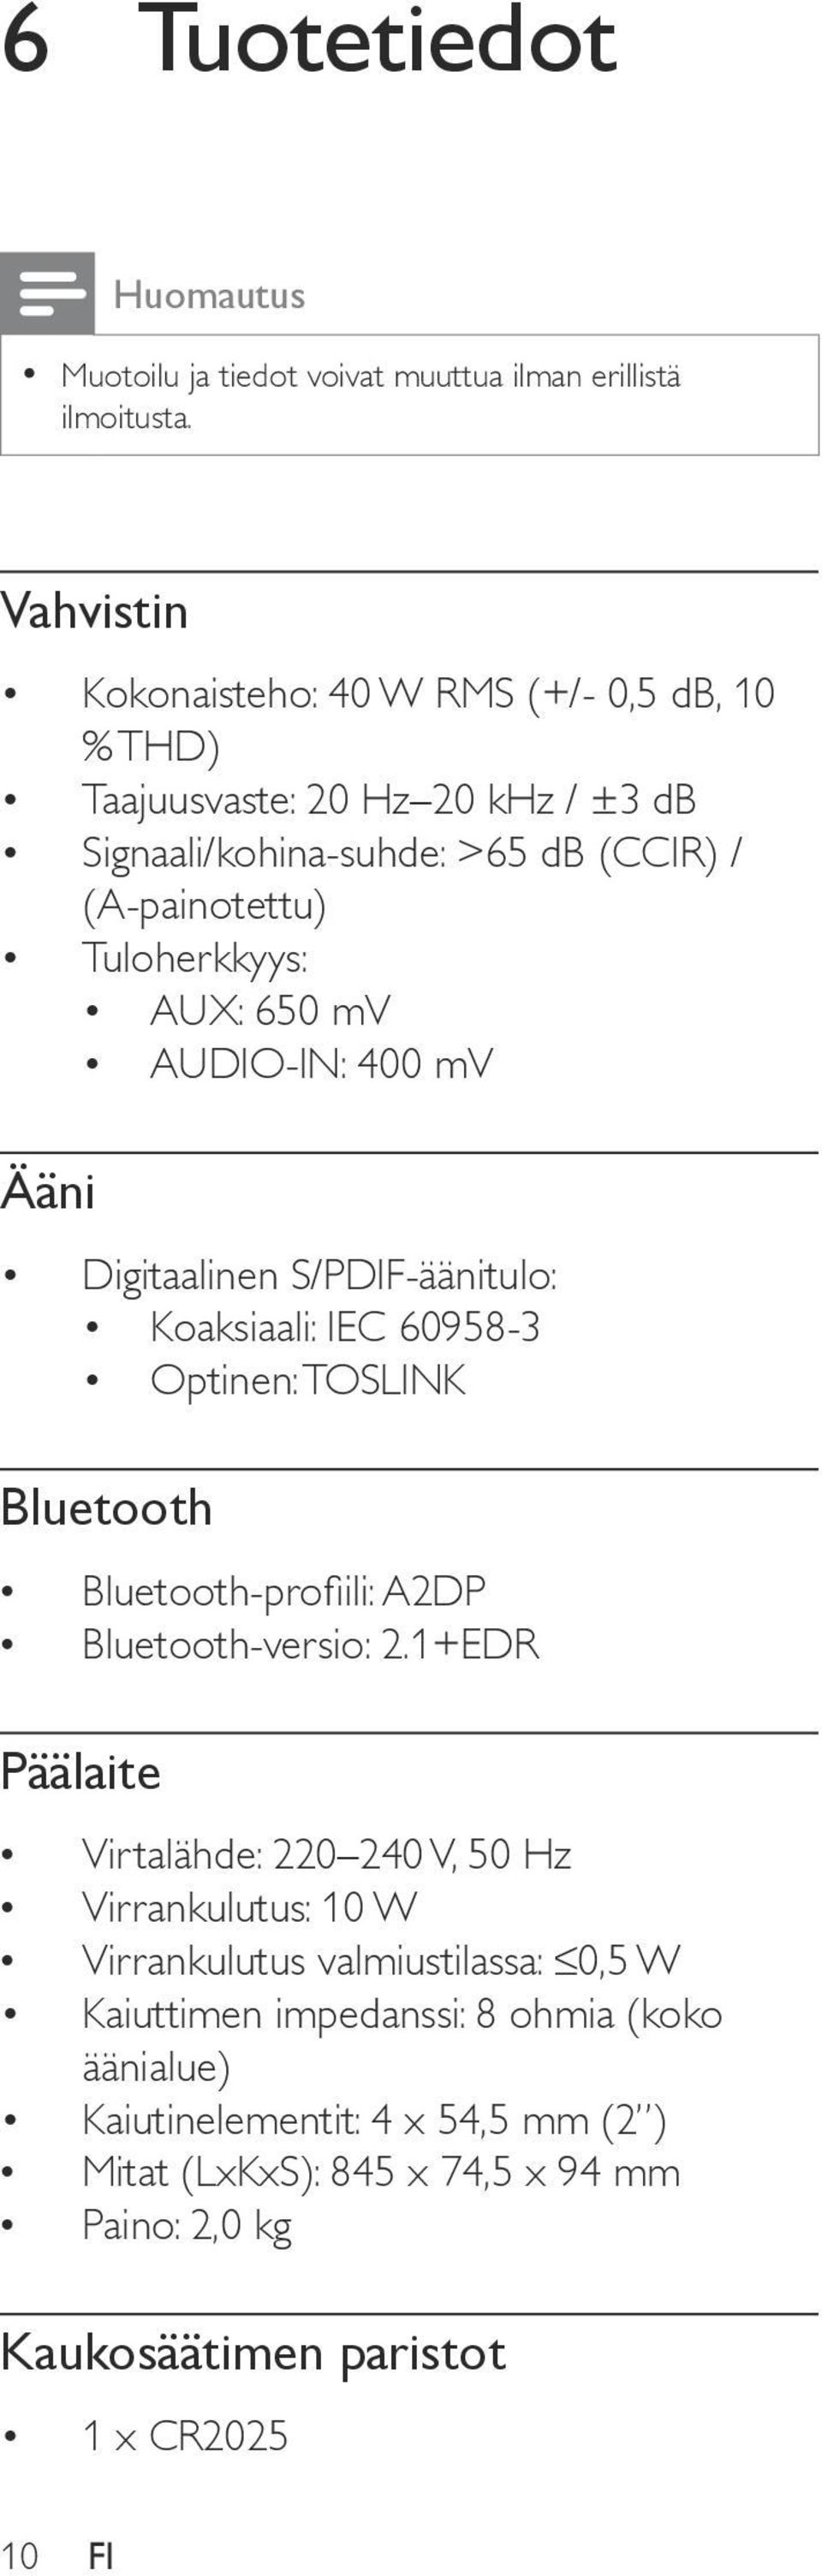 mv AUDIO-IN: 400 mv Ääni Digitaalinen S/PDIF-äänitulo: Koaksiaali: IEC 60958-3 Optinen: TOSLINK Bluetooth Bluetooth-profiili: A2DP Bluetooth-versio: 2.